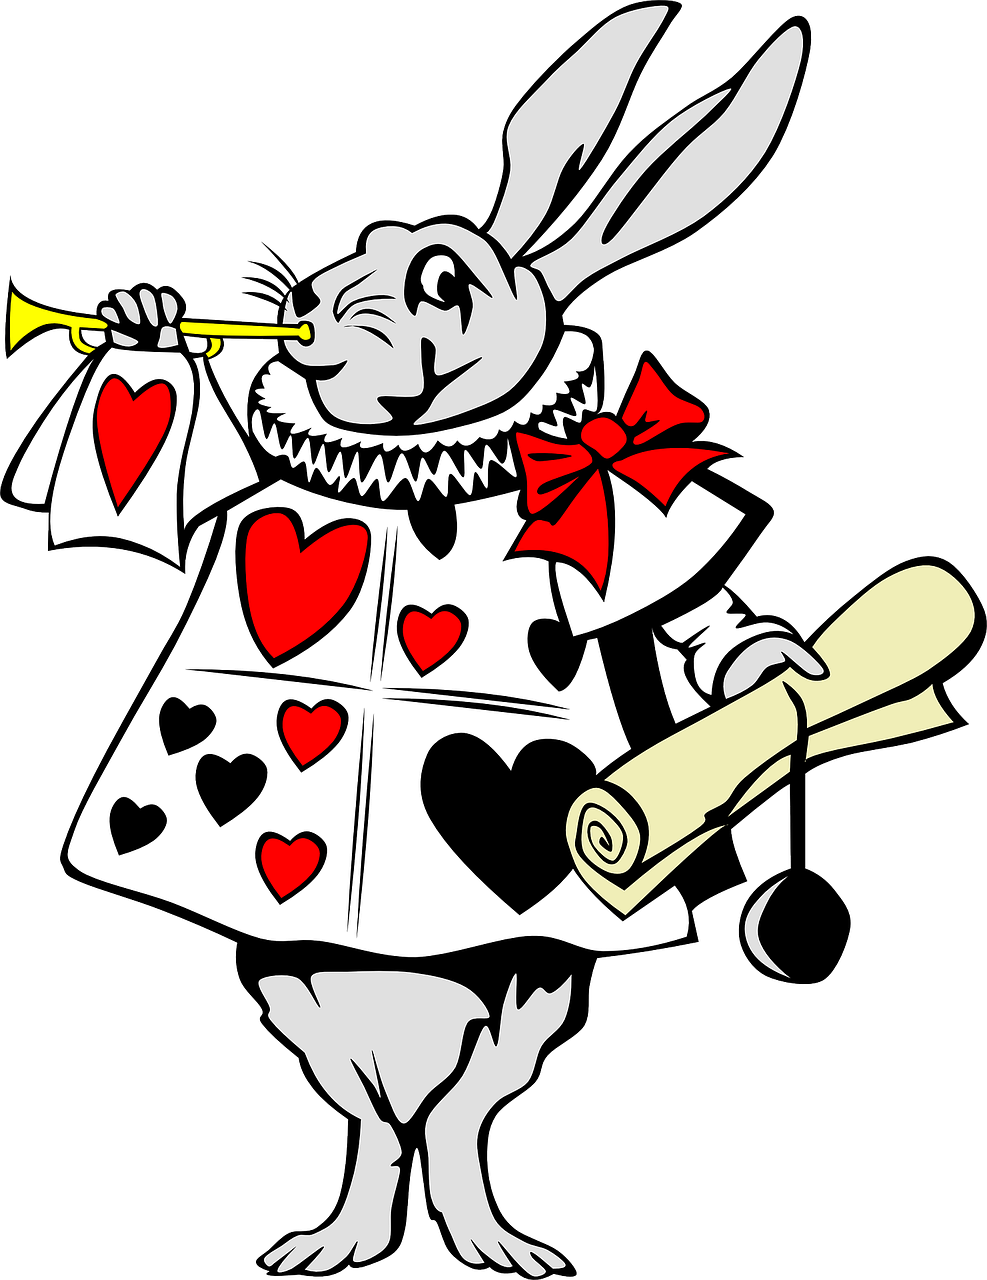 Imagen que muestra un conejo tocando una trompeta con un vestido de corazones y un pergamino en la mano.